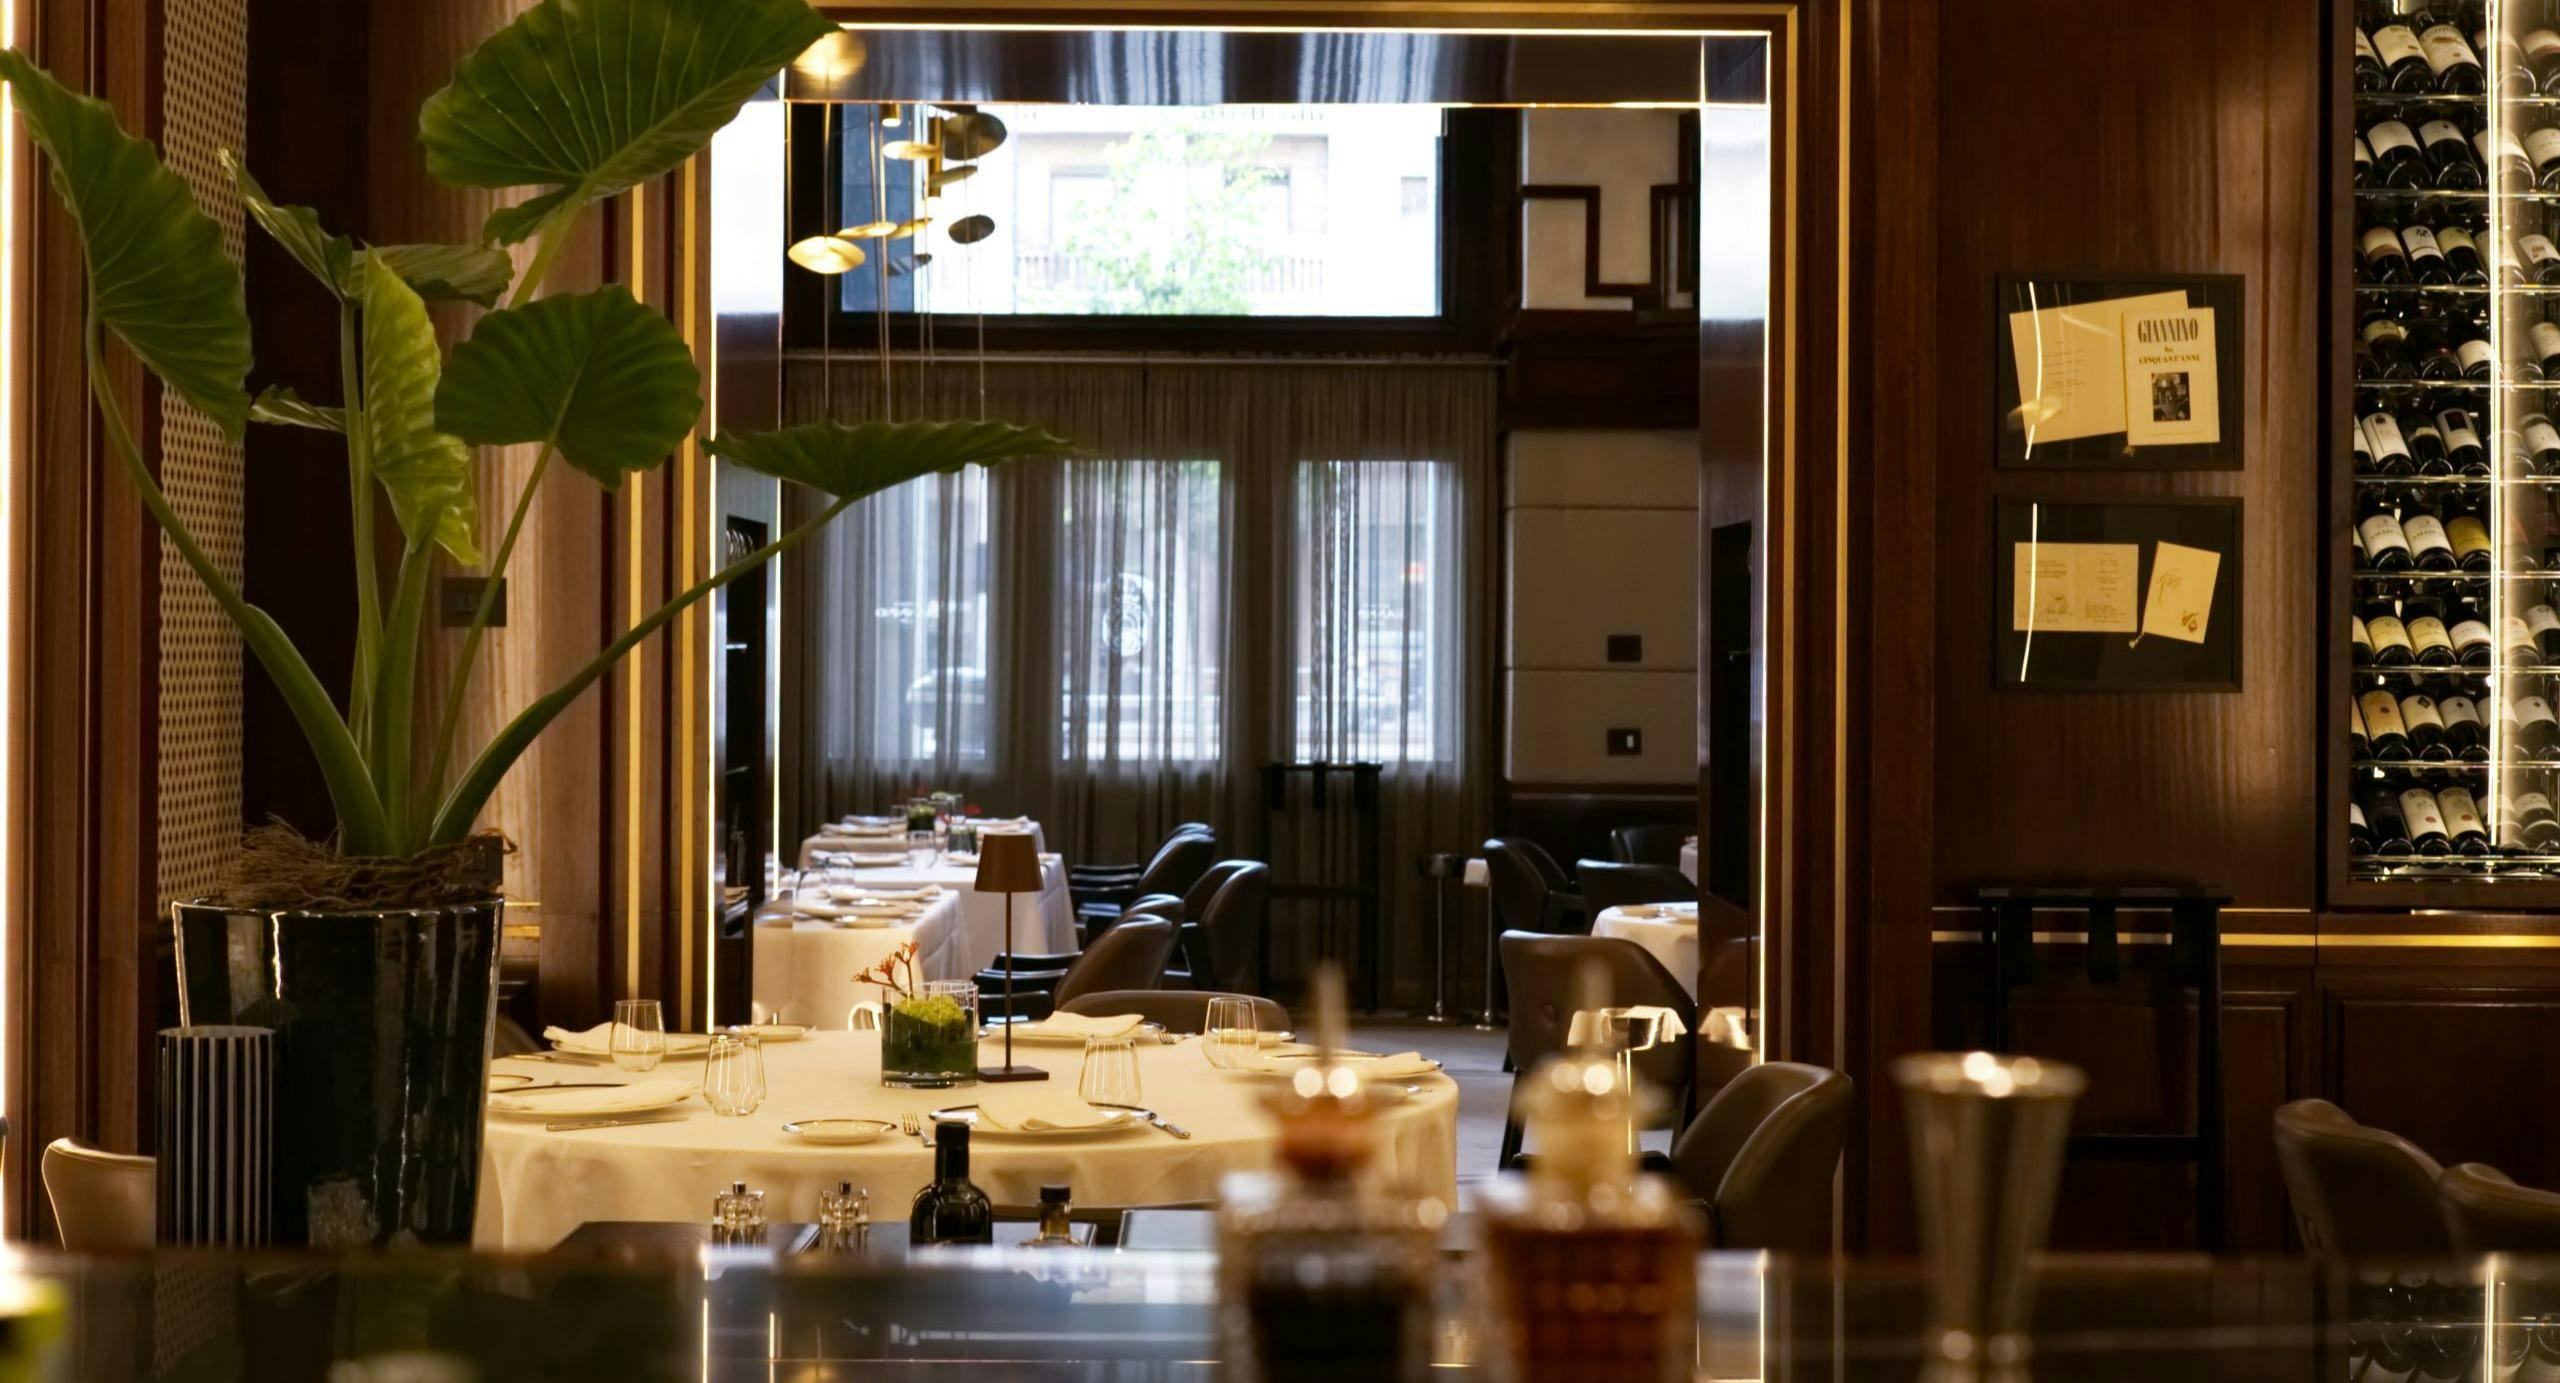 Photo of restaurant Giannino Mayfair in Mayfair, London